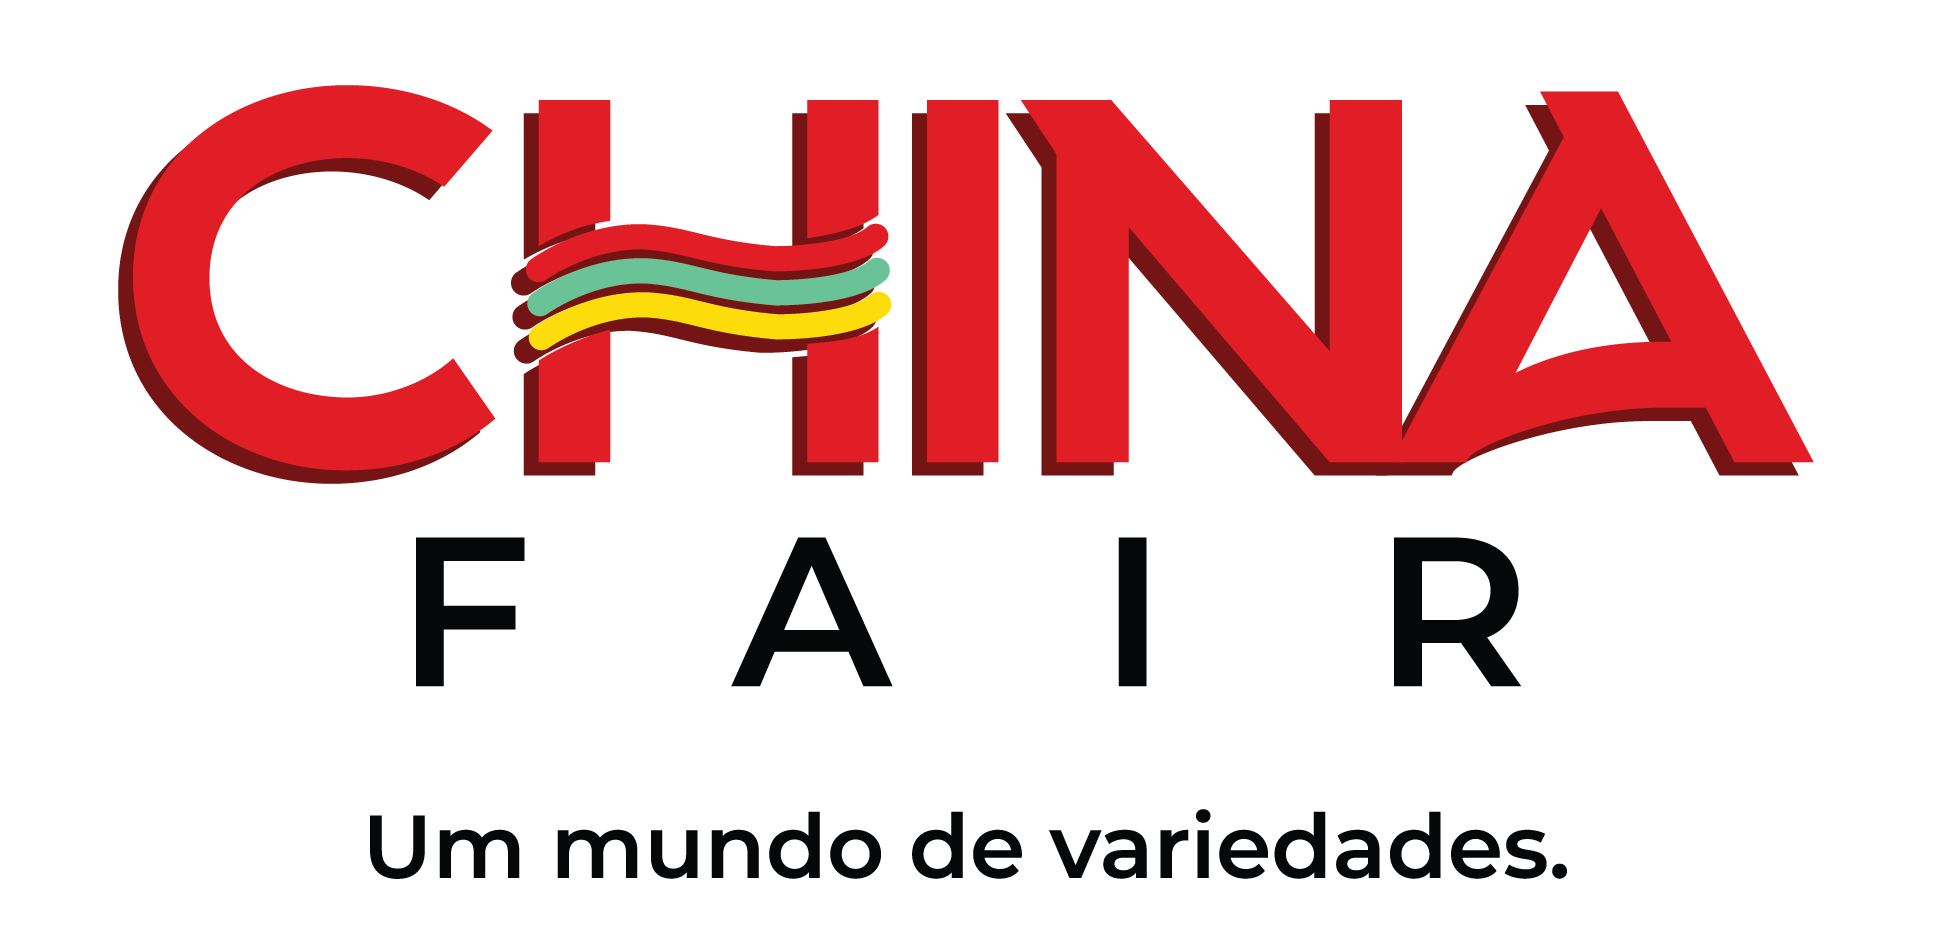 China Fair